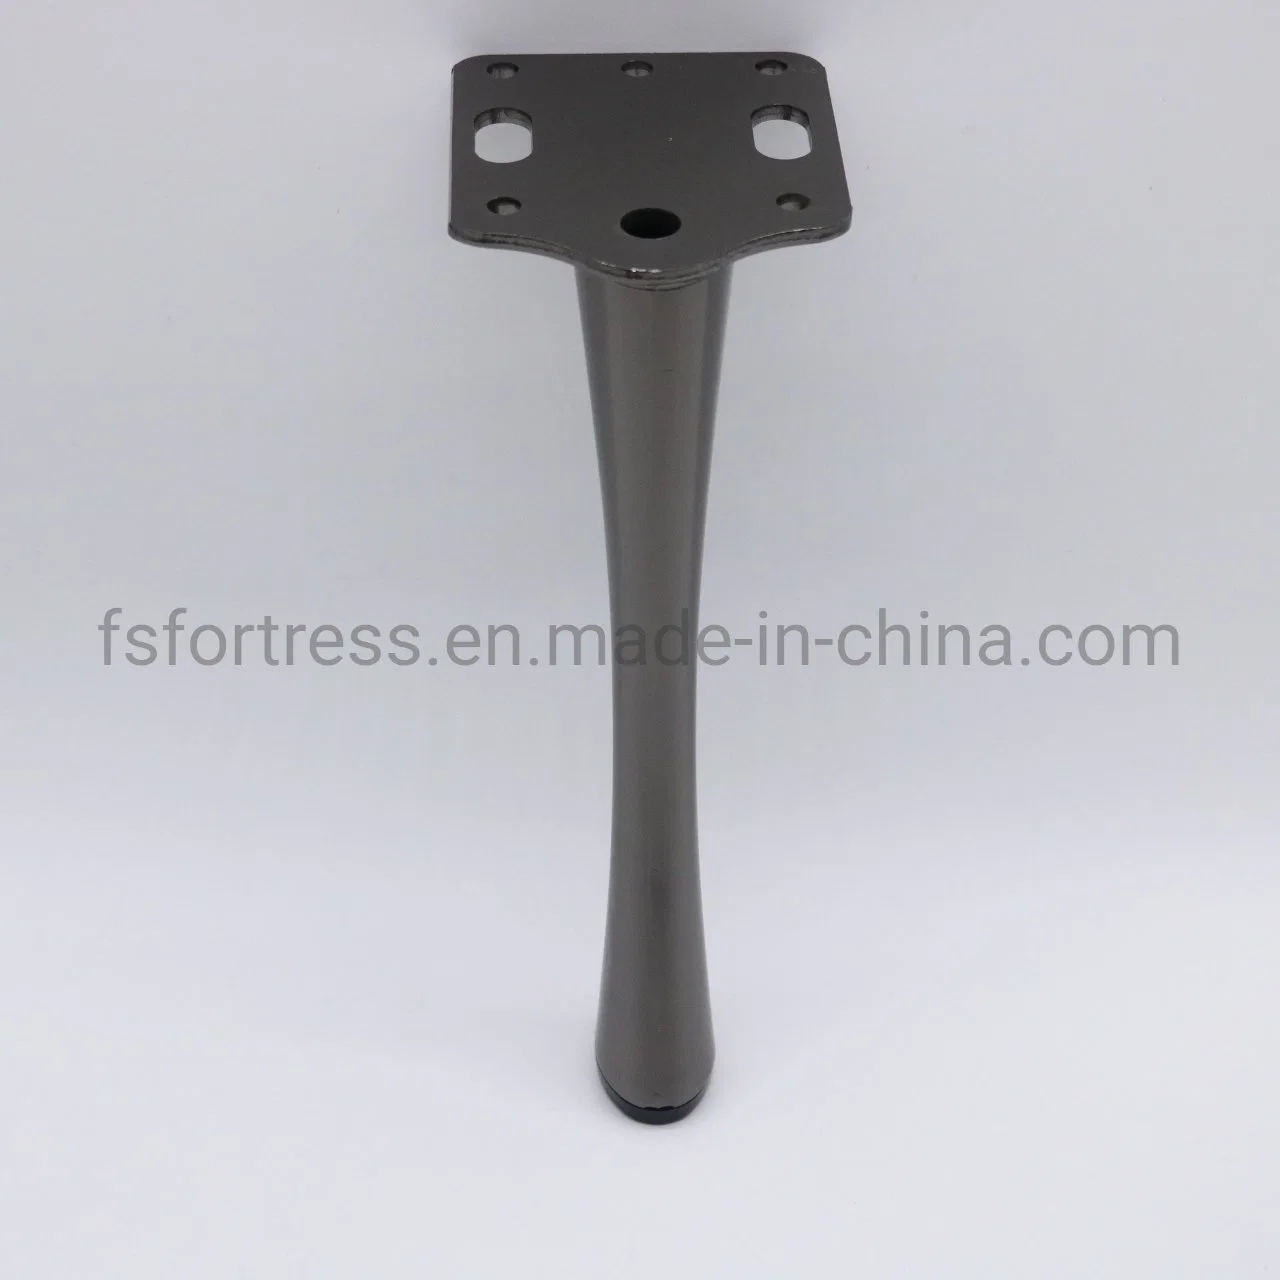 Unique Shape Delicate Table Leg Sofa Legs Furniture Hardware Accessories Model SL-161